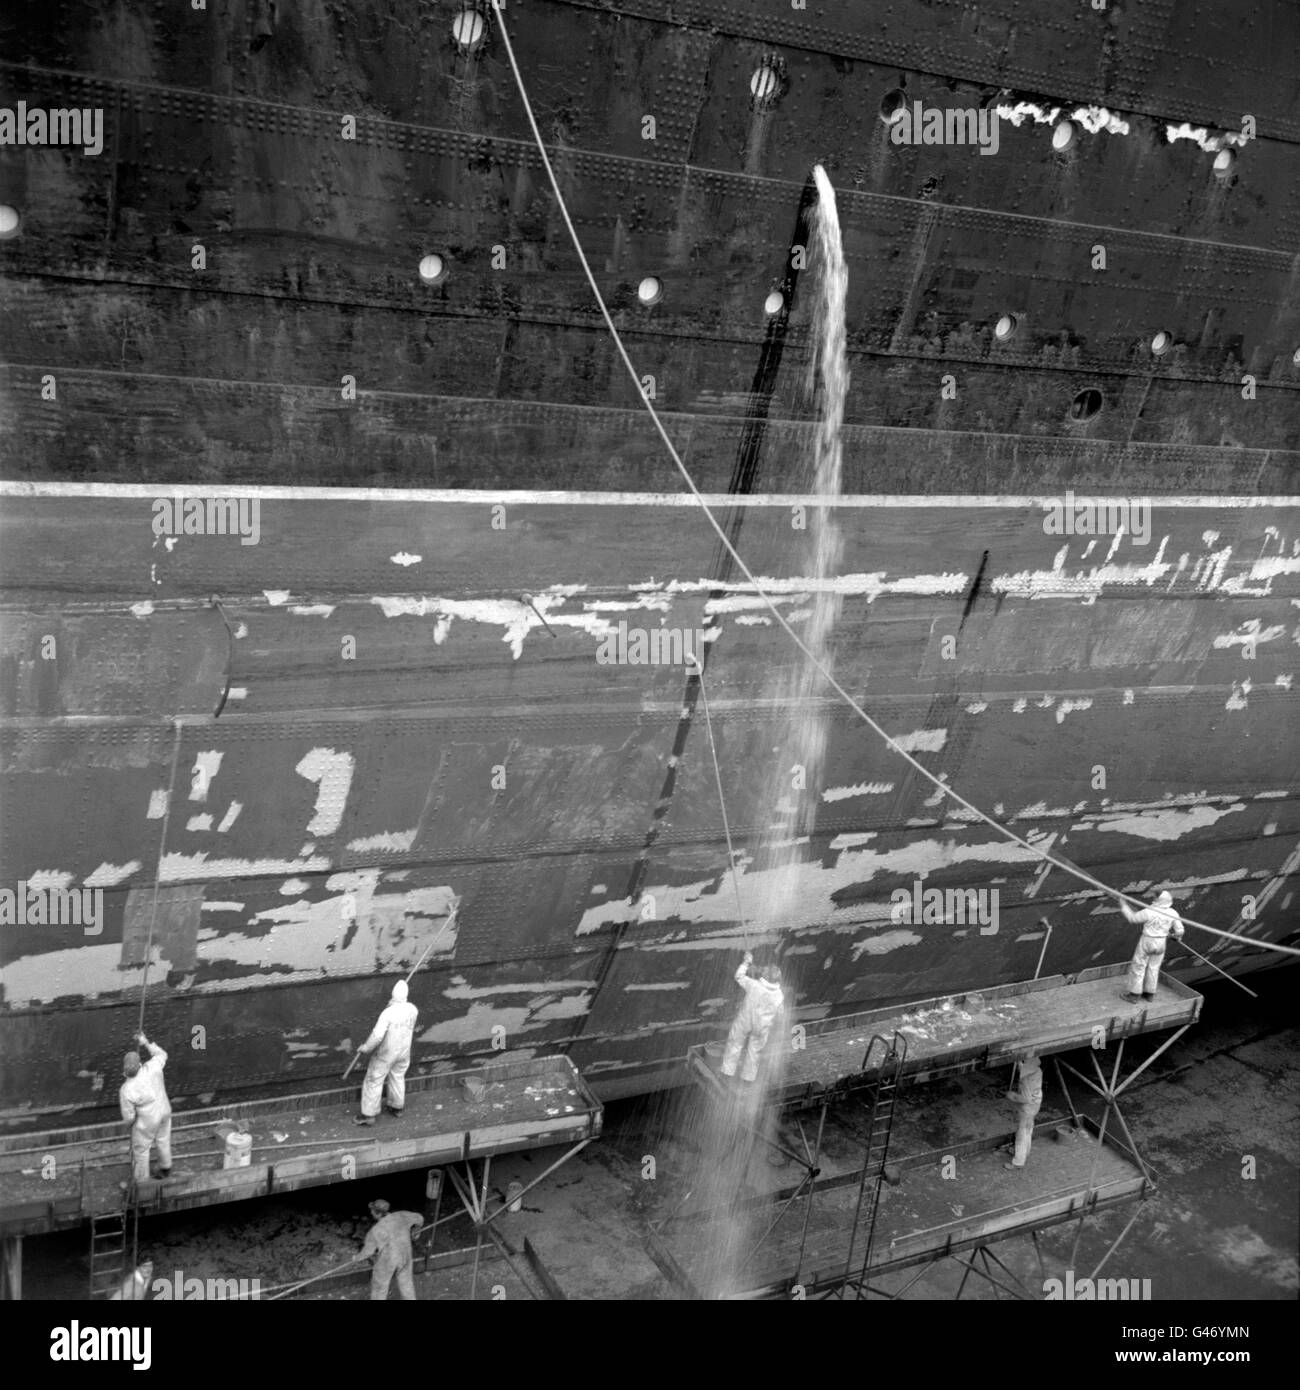 Eine Flut von Wasser kommt zu einem Arbeiter, der am Rumpf des Liners „RMS Queen Elizabeth“ im King George V Dry Dock in Southampton arbeitete. Stockfoto